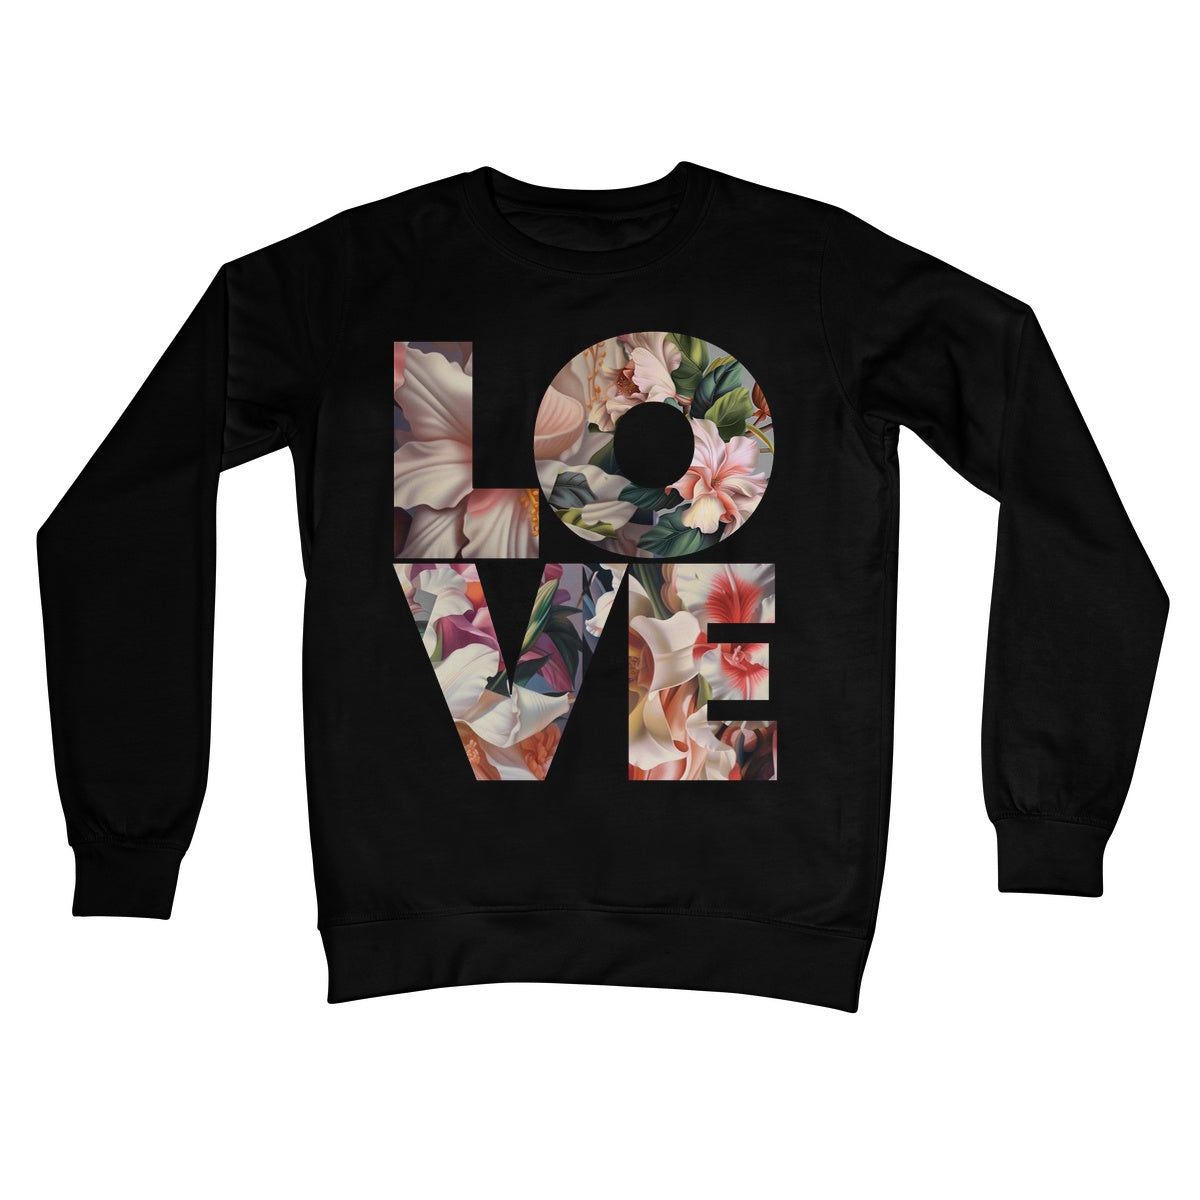 All Love Crew Neck Sweatshirt